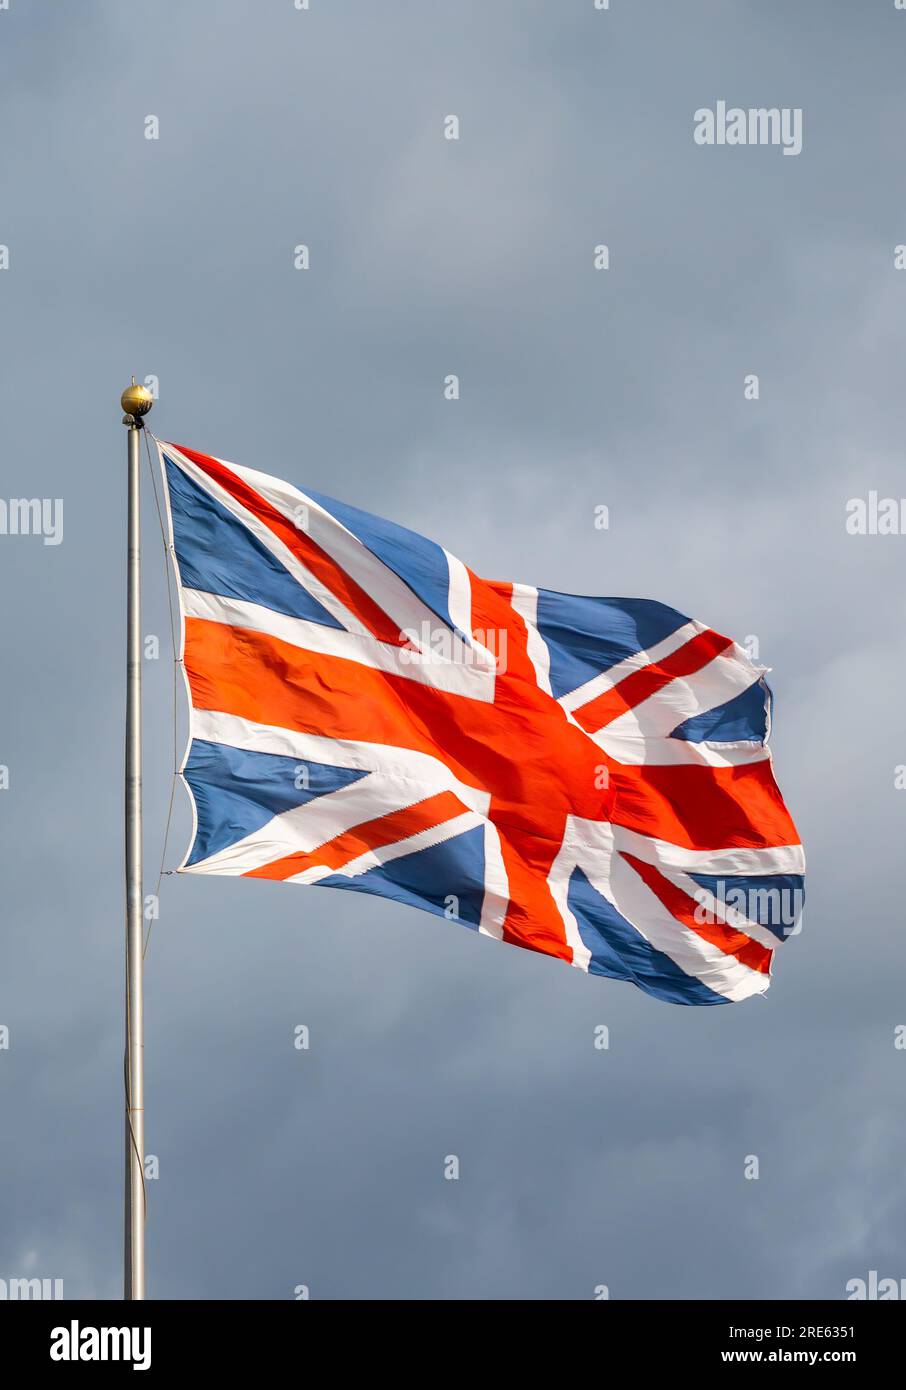 Union Jack, bandiera del Regno Unito di Gran Bretagna e Irlanda del Nord, che vola con vento forte su un palo contro il cielo nuvoloso. Foto Stock